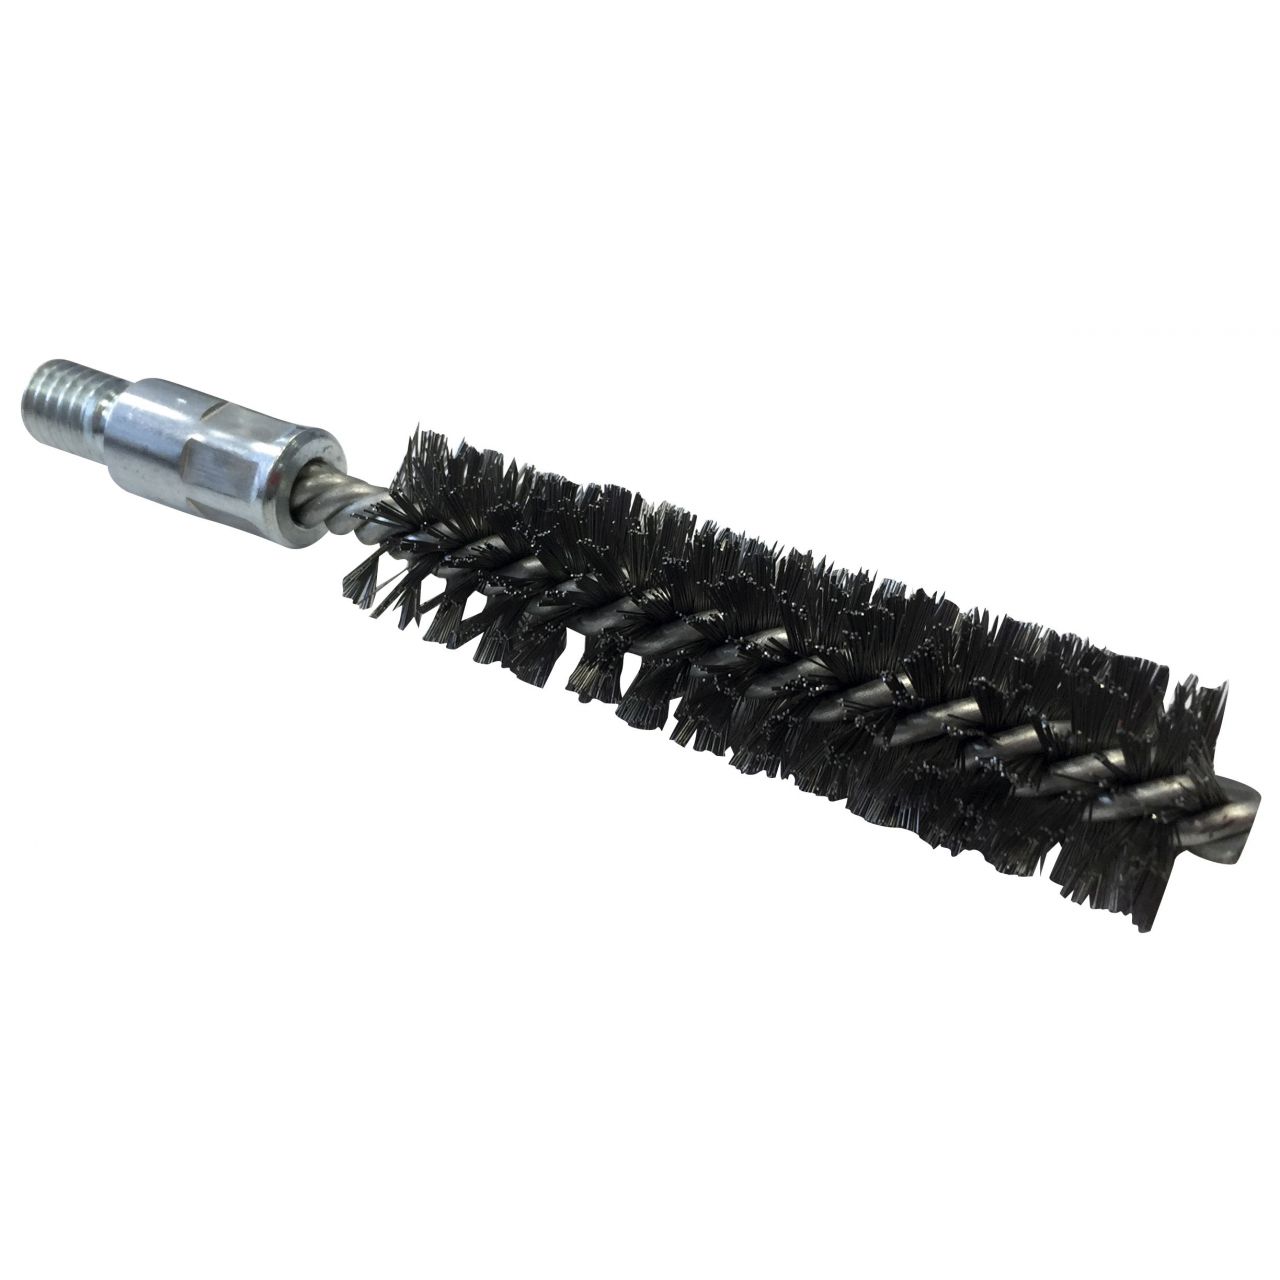 Cepillo limpiatubos de acero con rosca 1/2”BSW Ø 40 mm (100x160x0.3 mm)